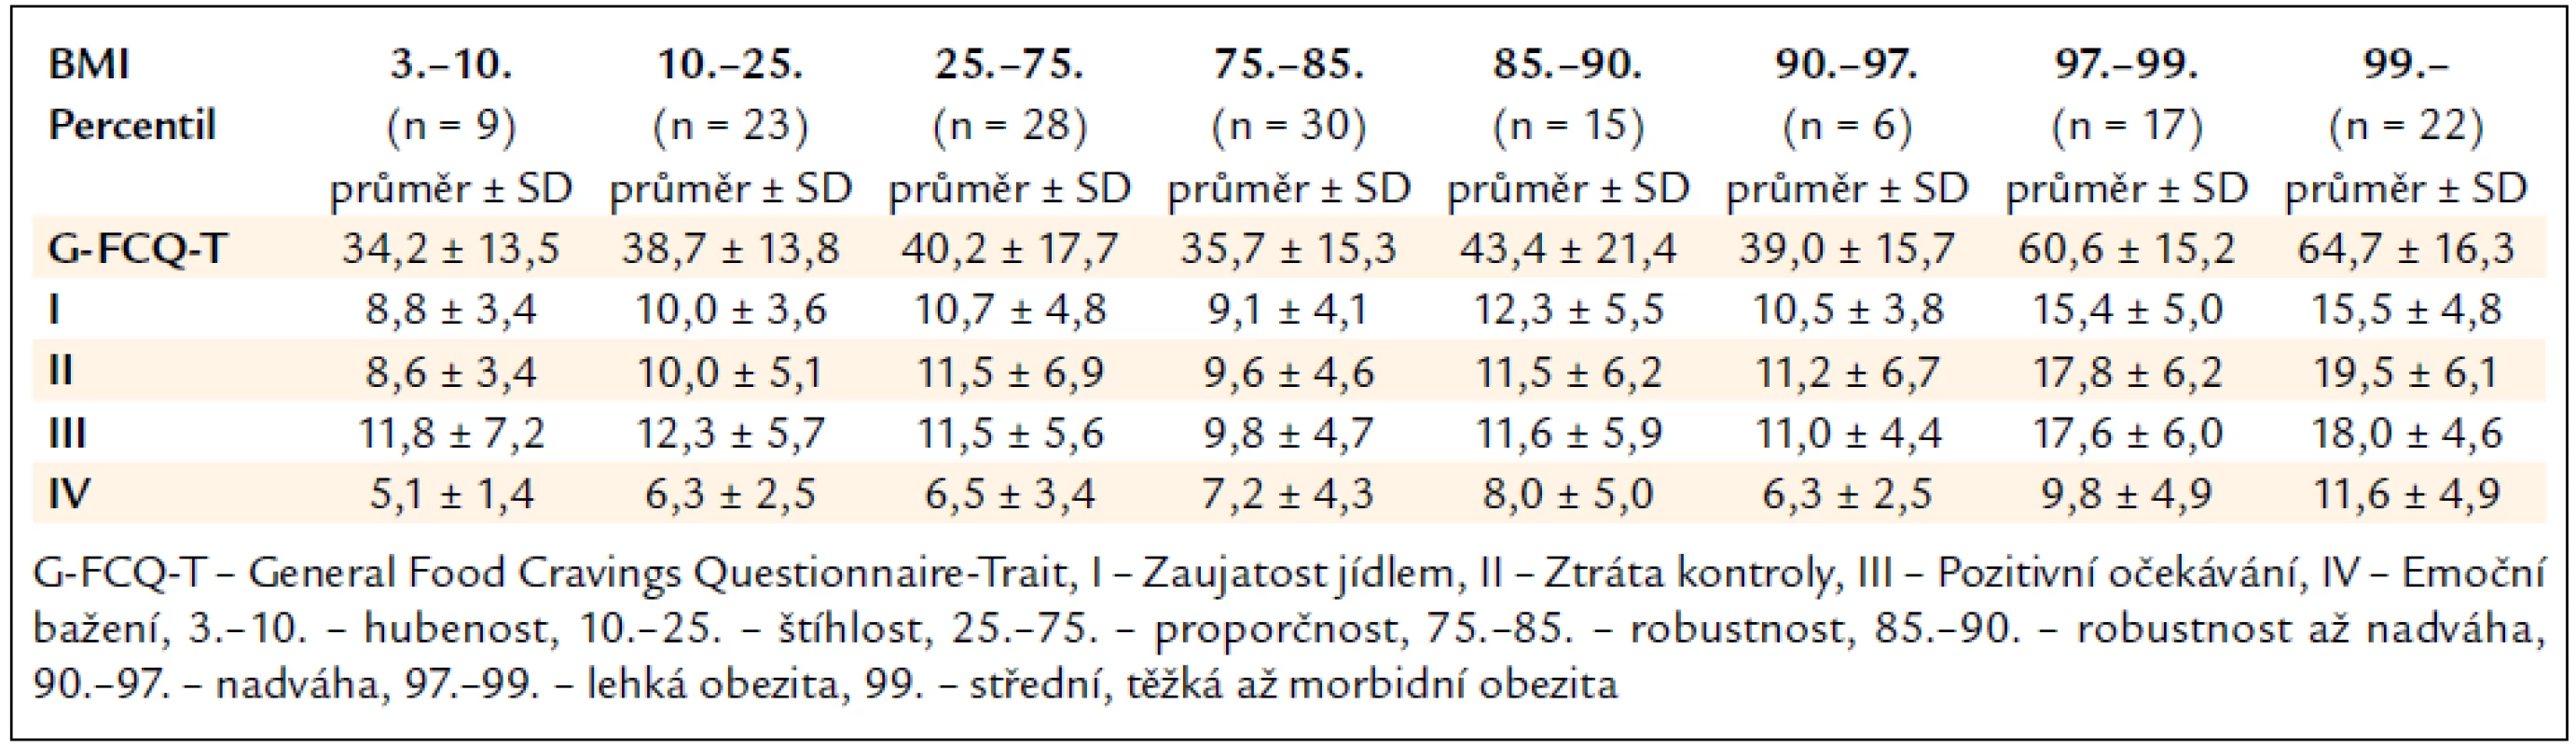 Průměrné hrubé skóre G-FCQ-T a jeho subškál u osob rozdělených podle percentilových tabulek BMI pro příslušný věk.